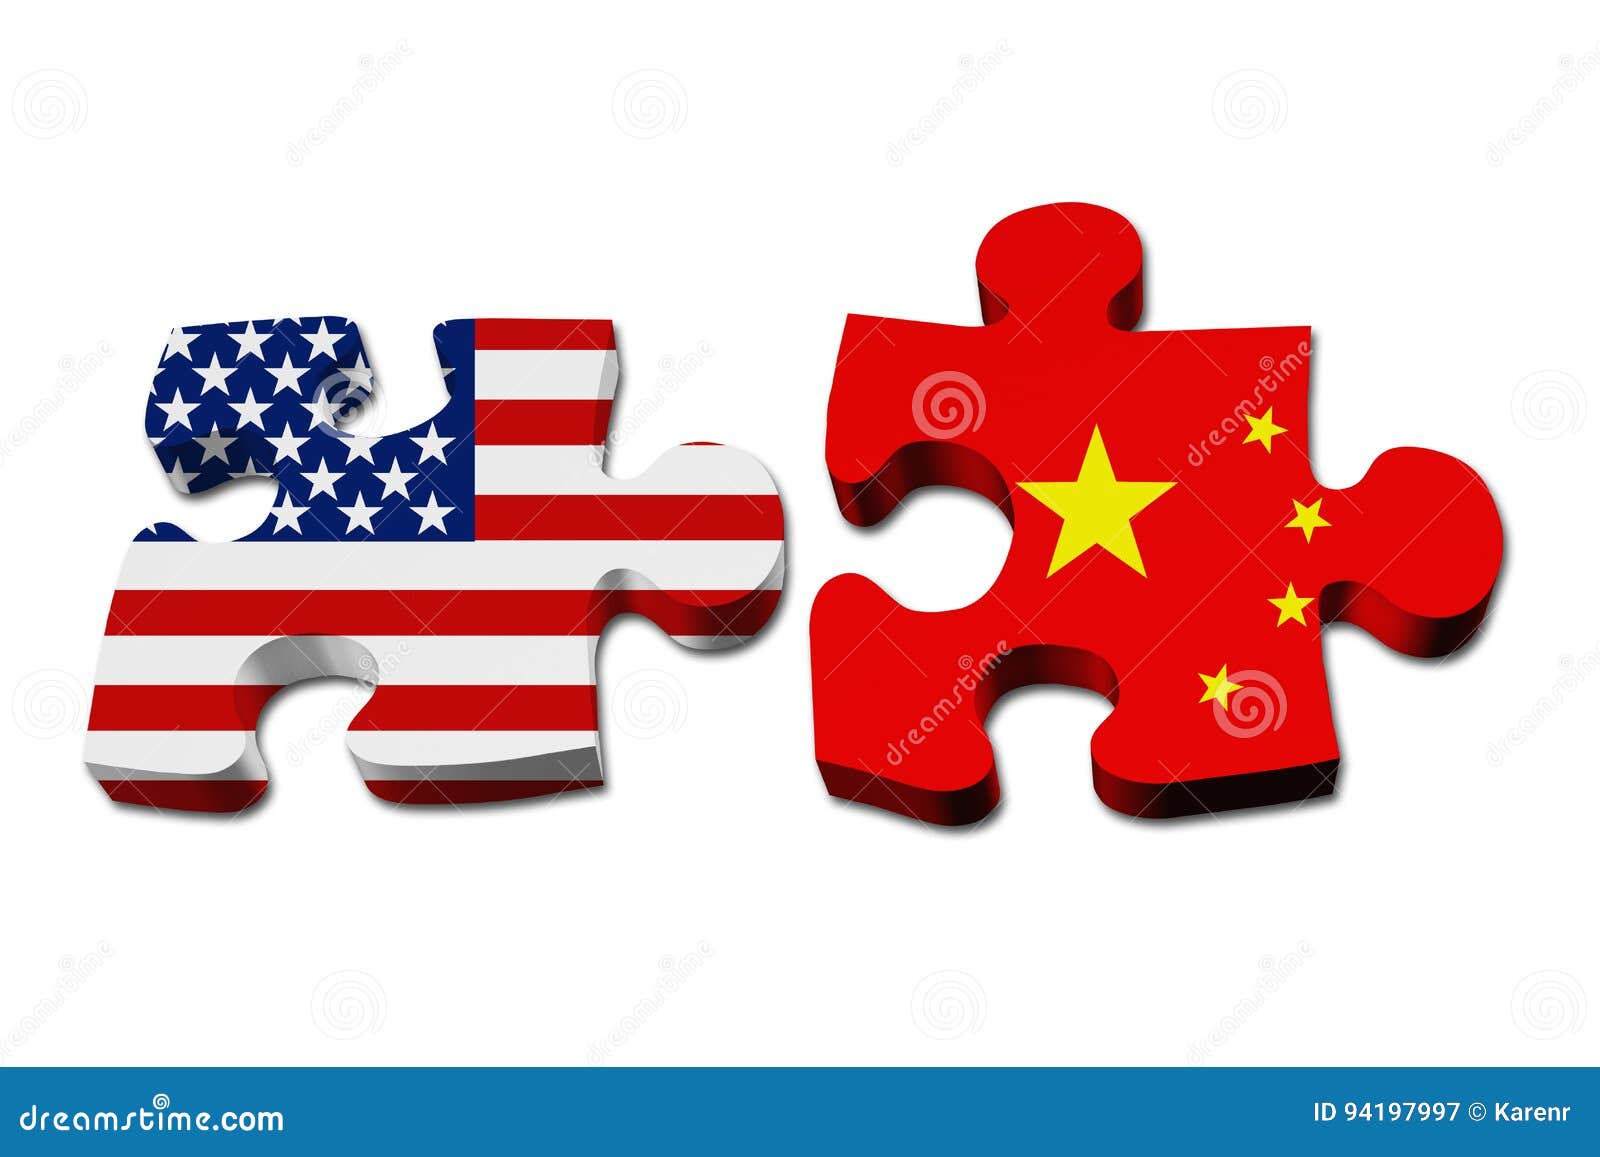 耶伦结束访华召开发布会，重申美国不寻求与中国“脱钩”_中美_沟通_美中关系